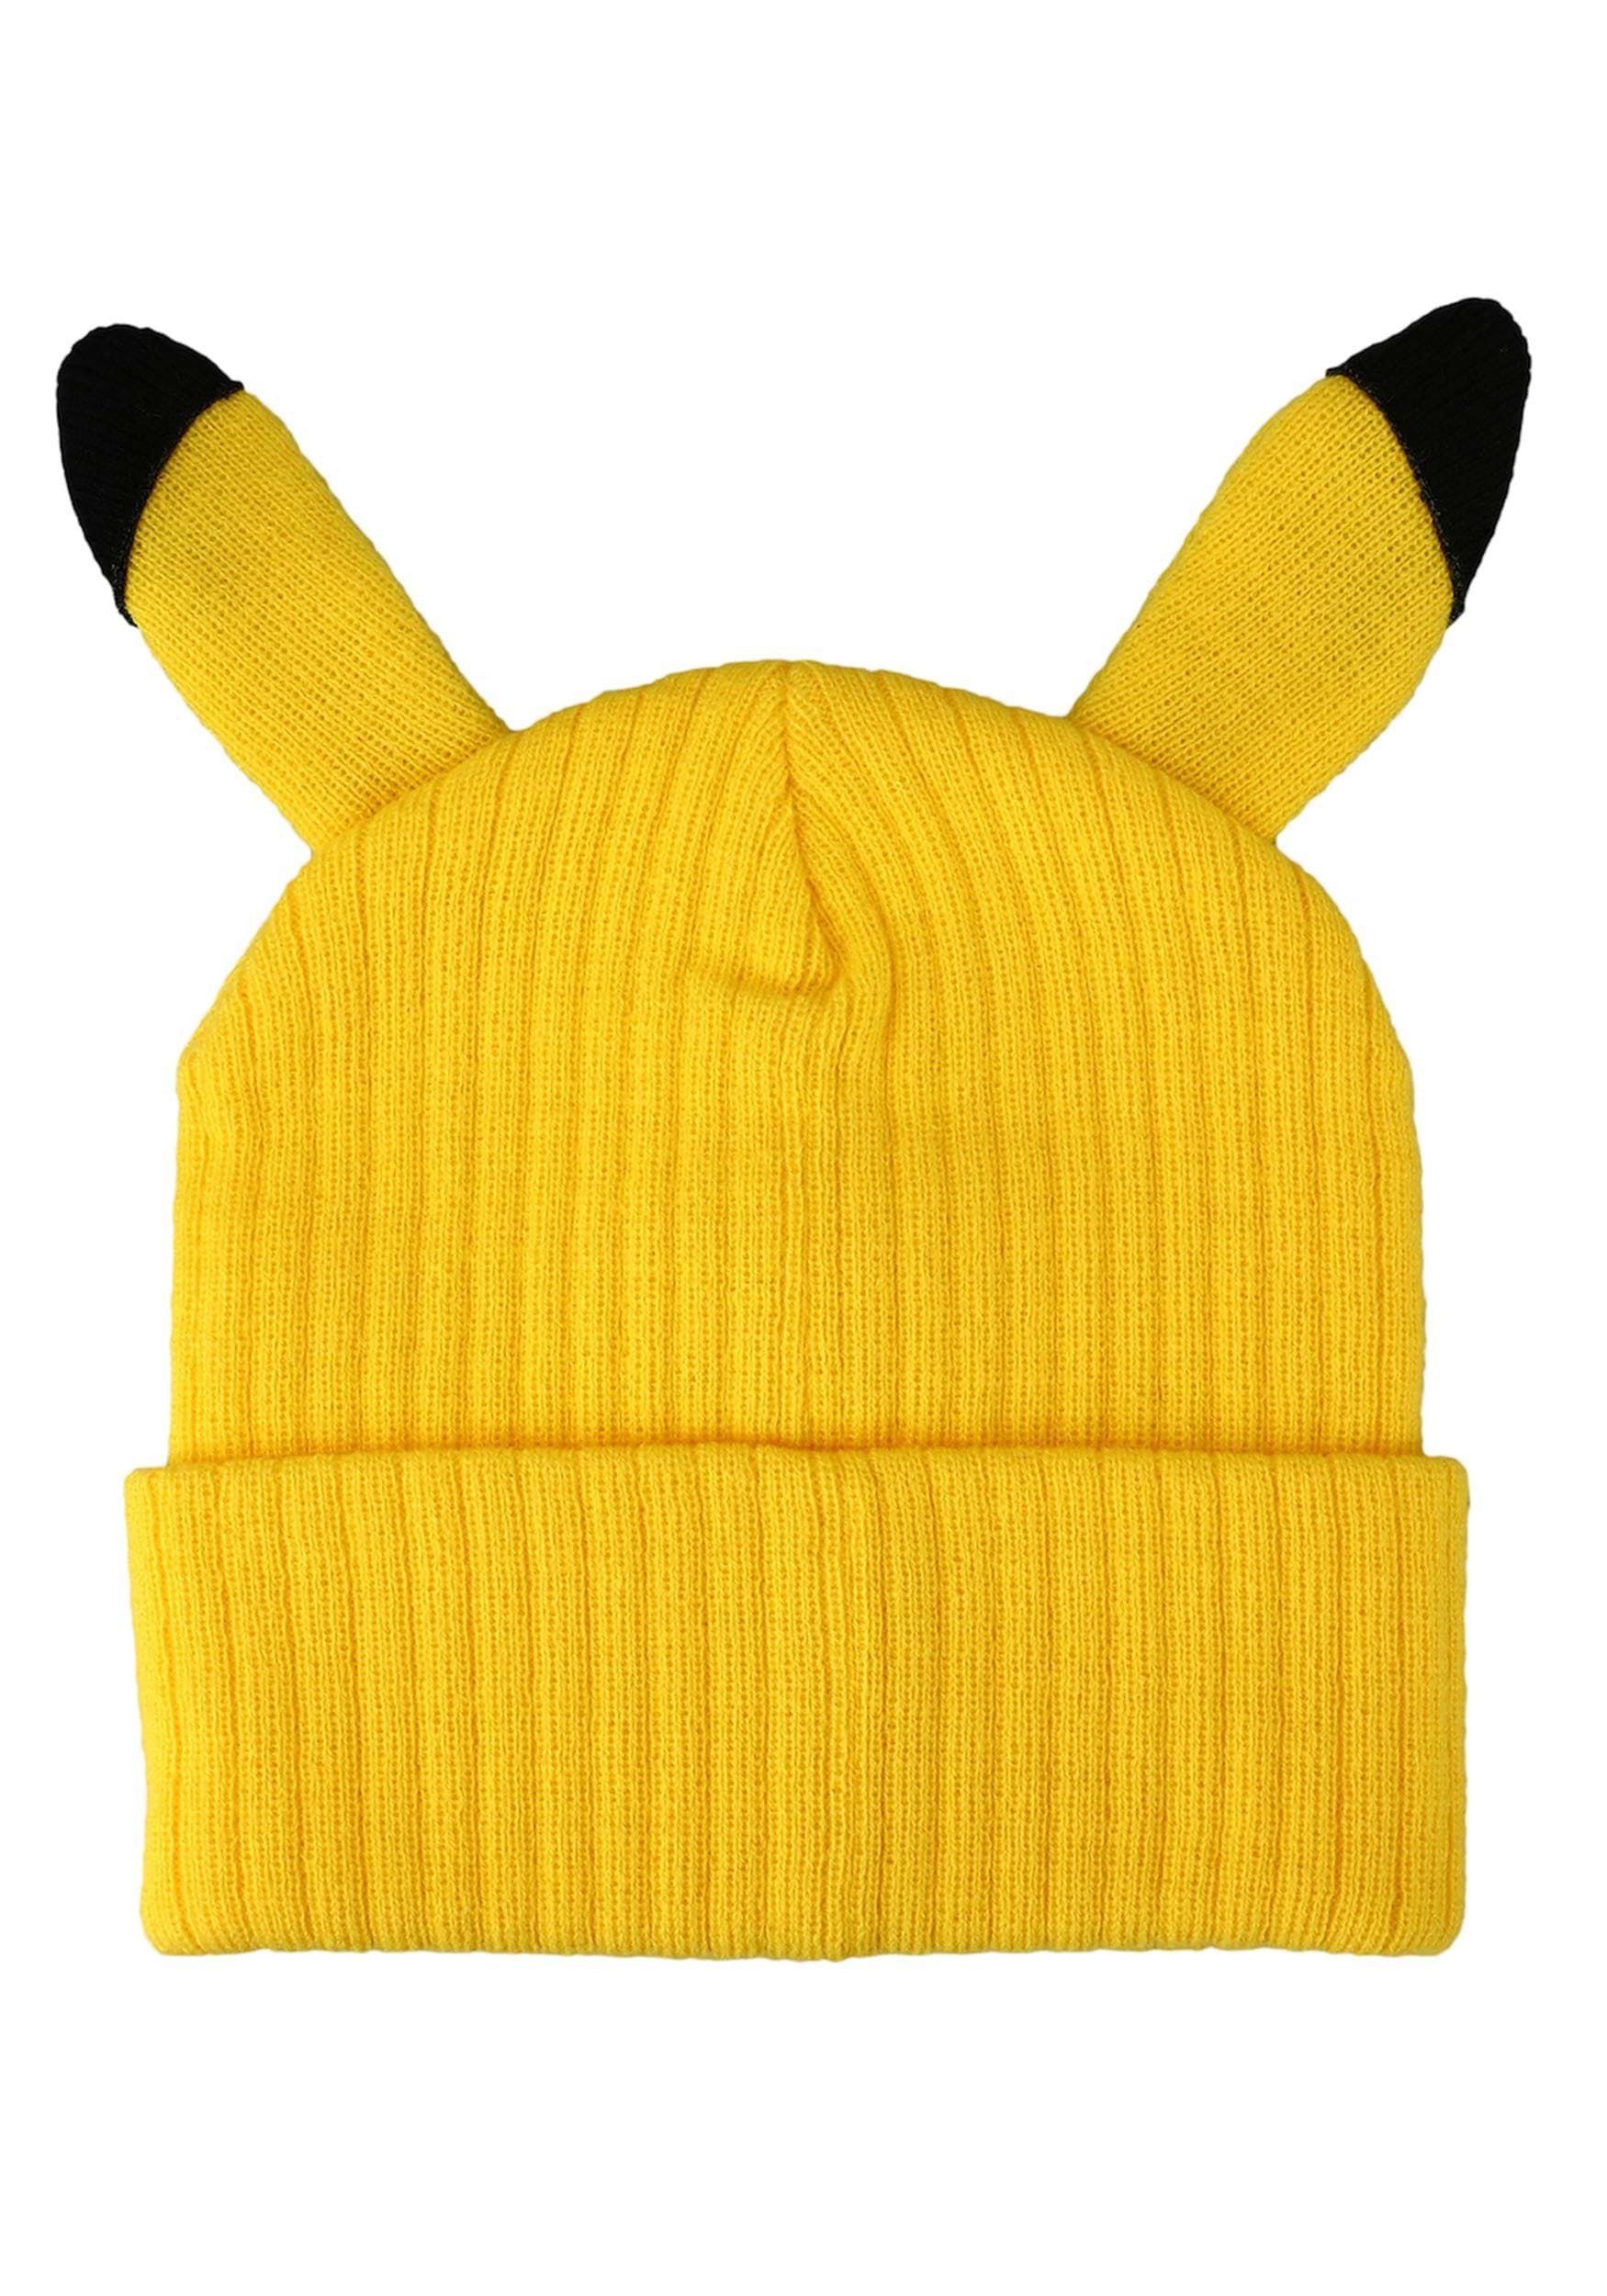 Pikachu 3D Cosplay Cuff Beanie